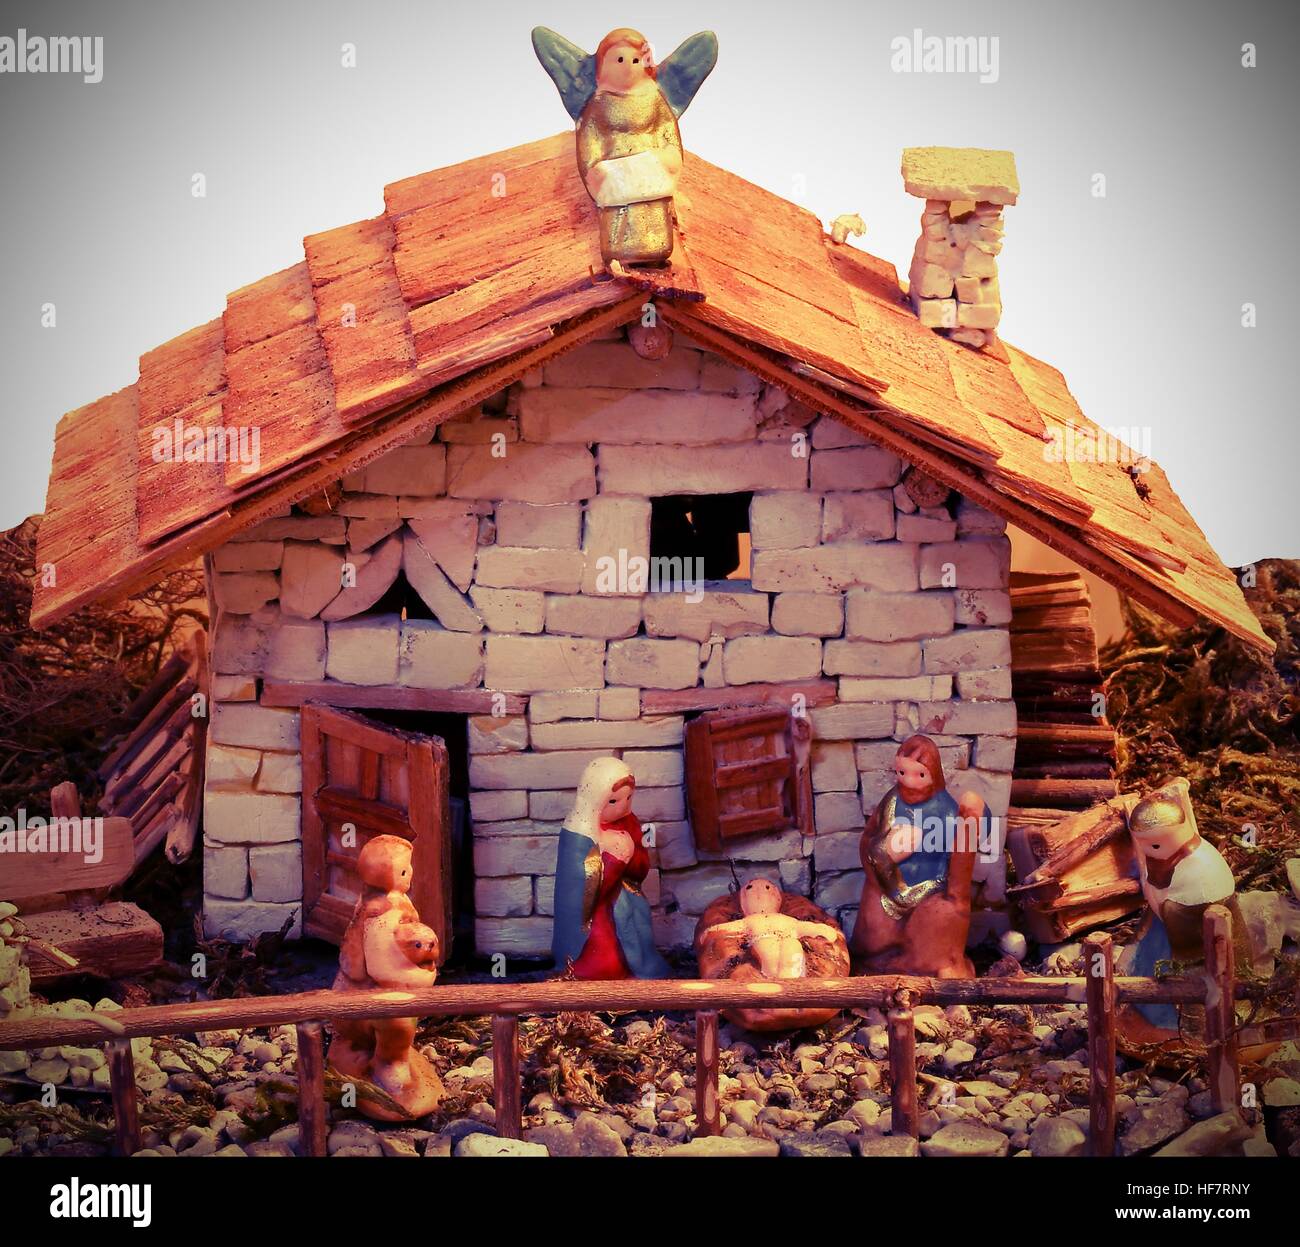 Crèche de Noël avec la sainte famille est une vieille maison en miniature Banque D'Images